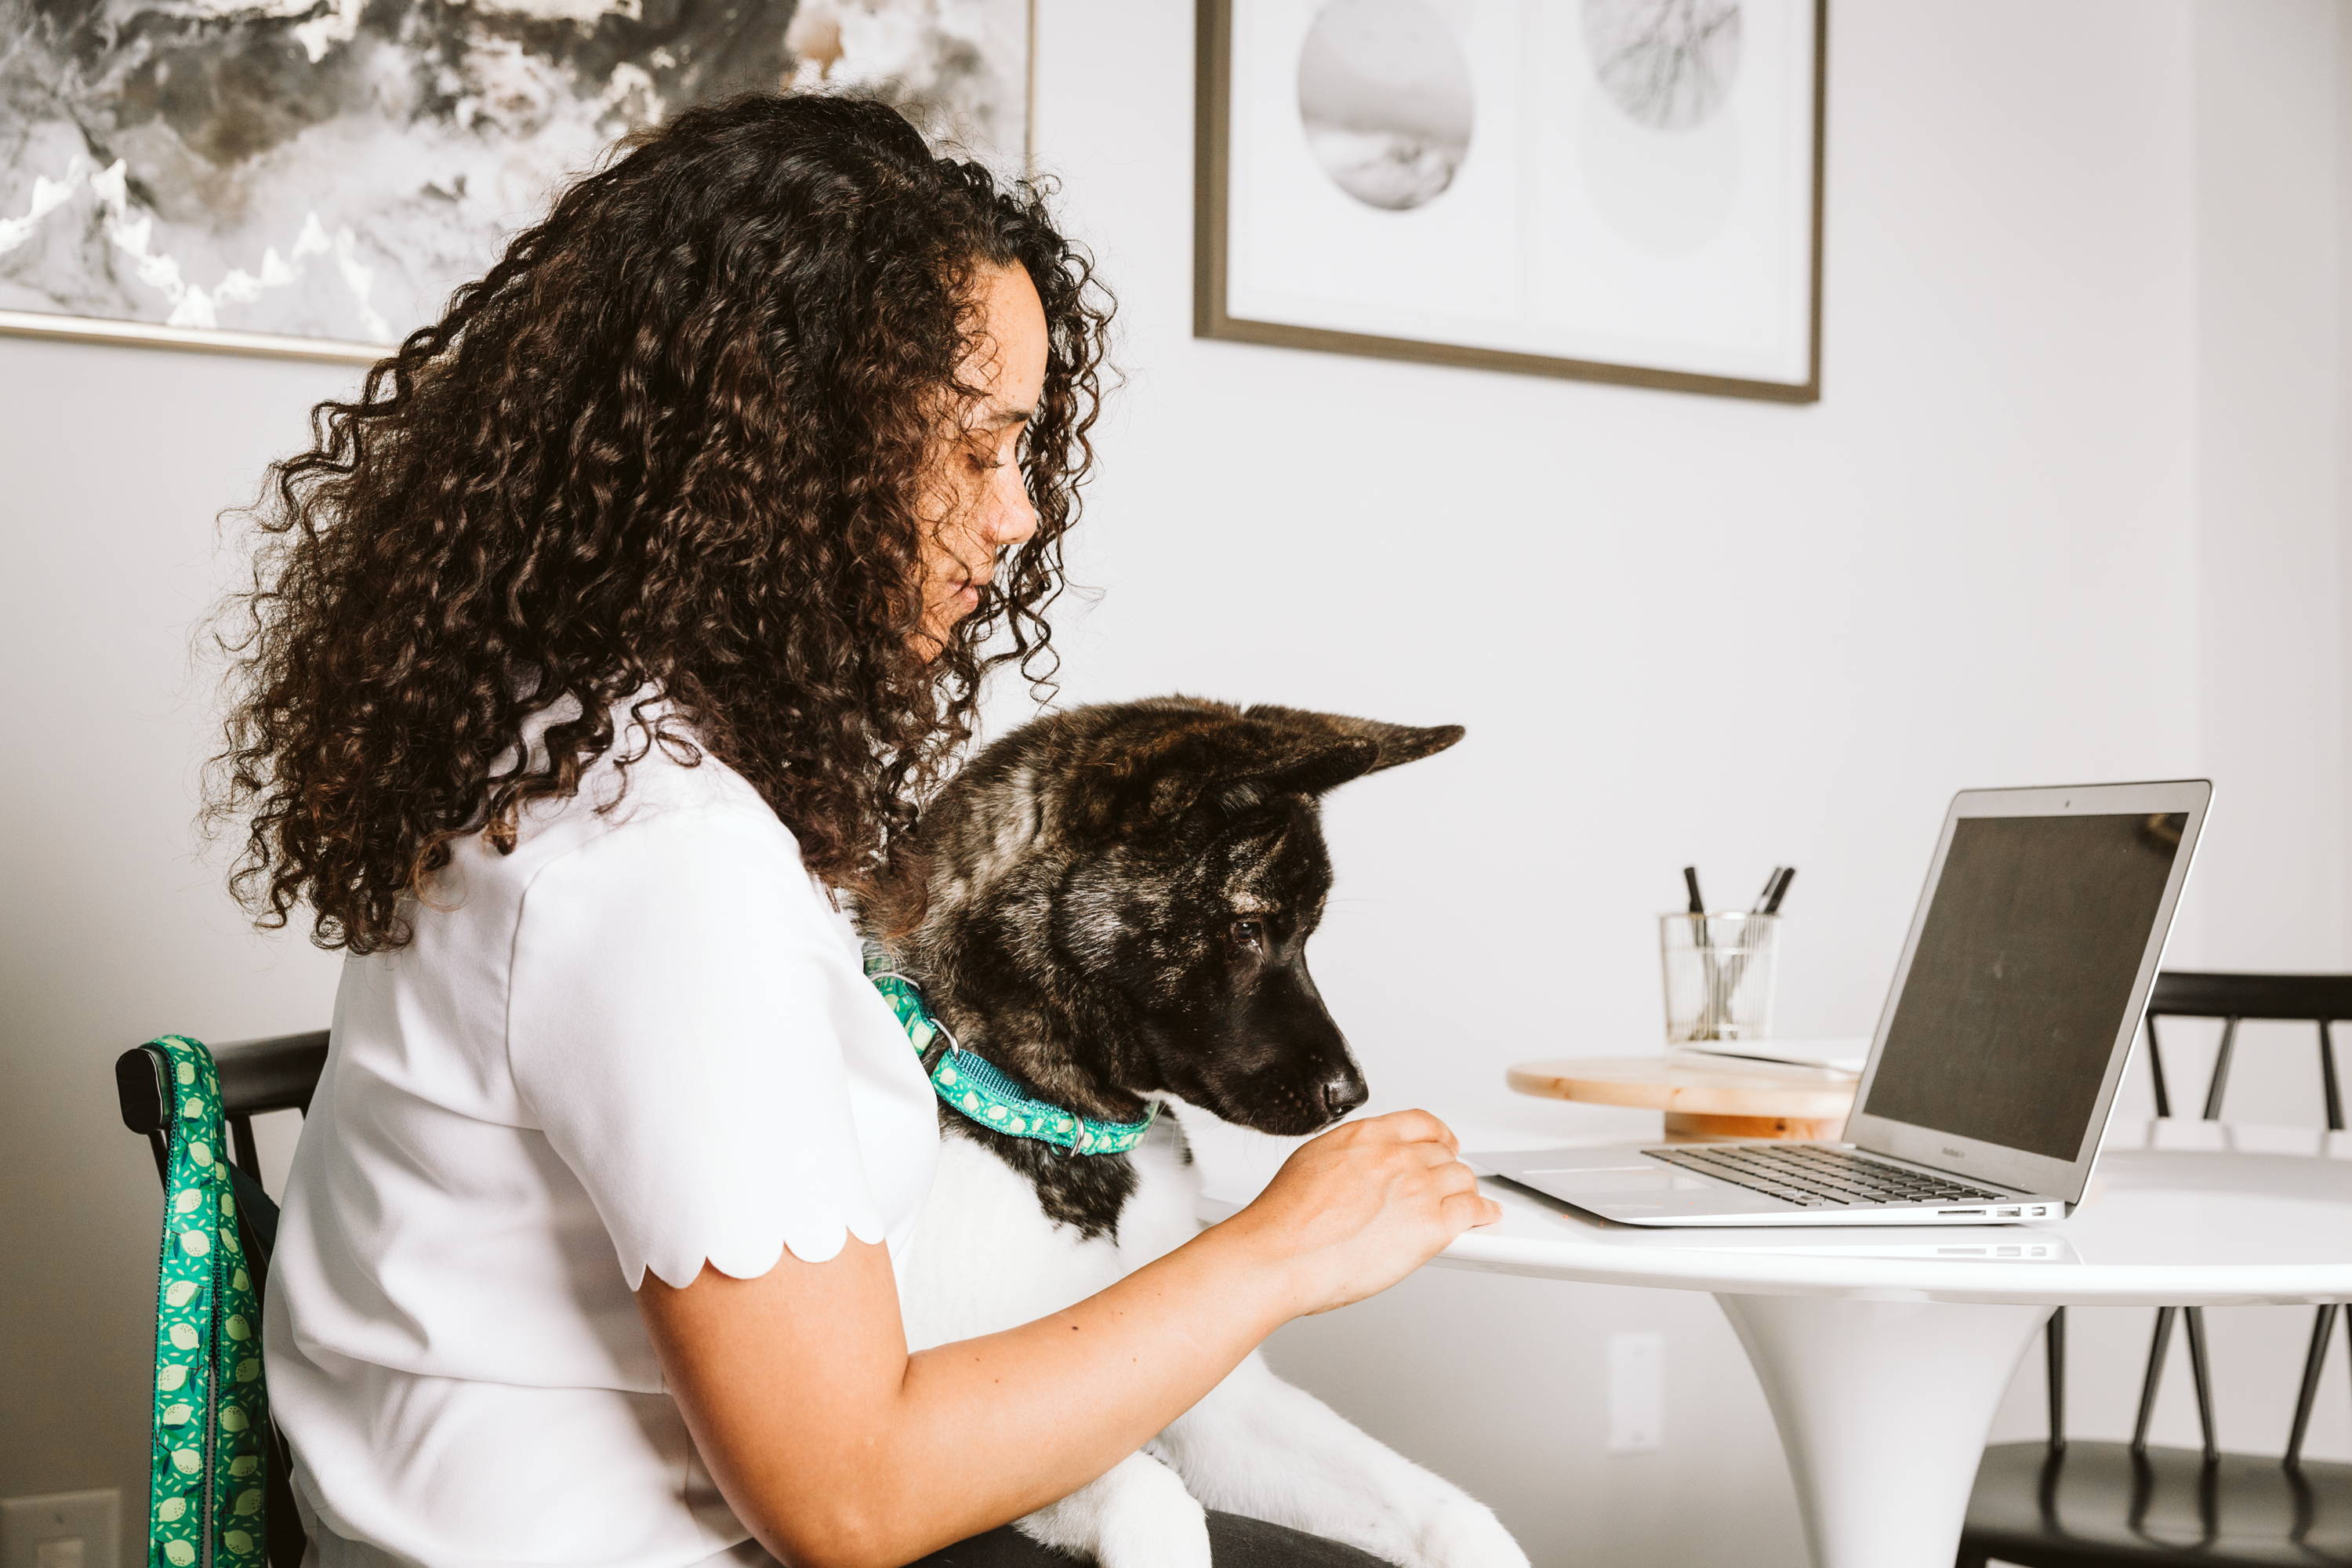 Woman and dog at computer